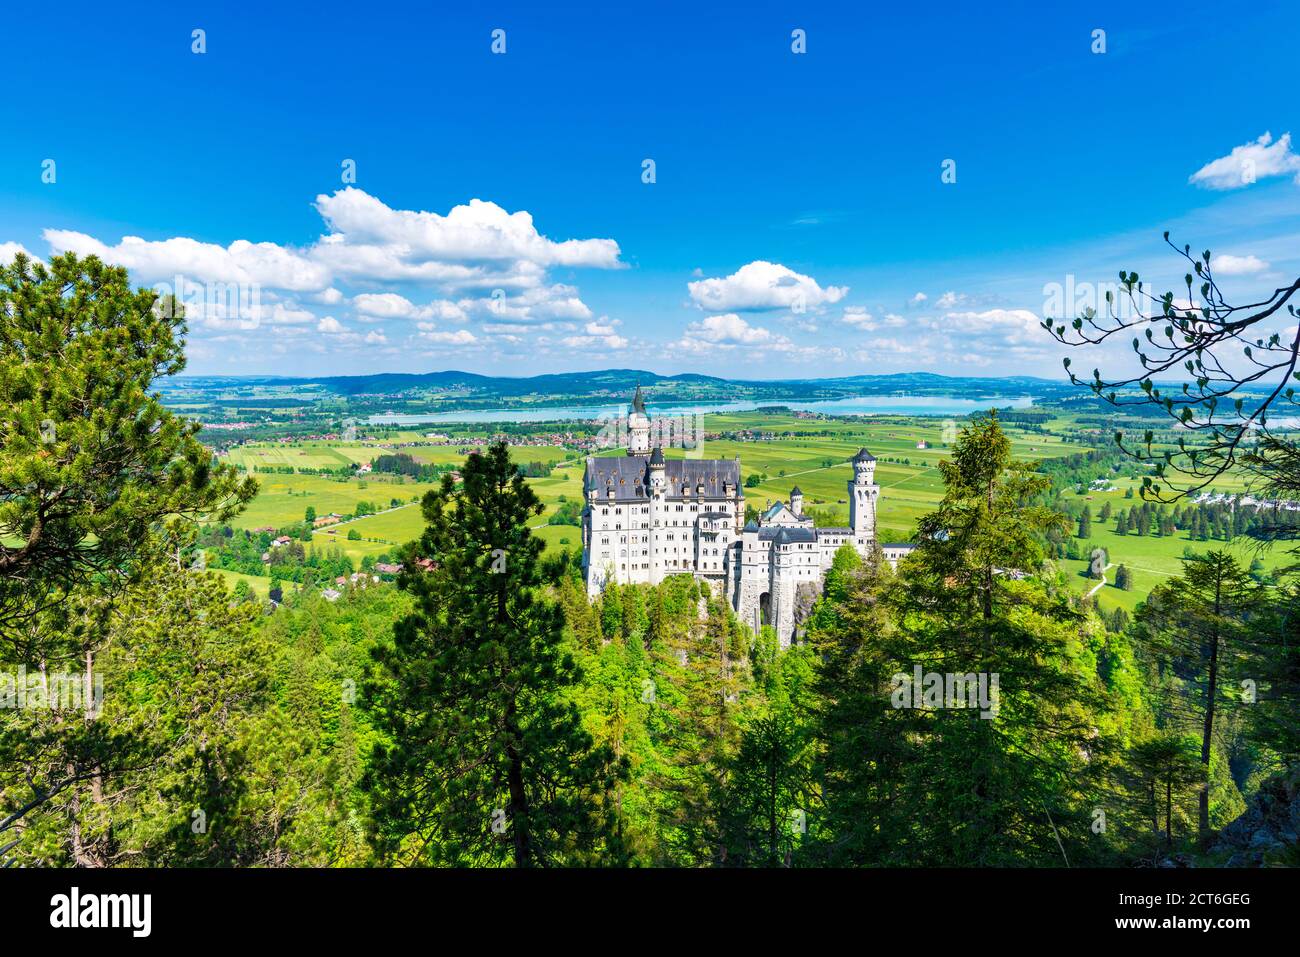 Schloss Neuschwanstein bei Hohenschwangau, Romantische Strasse, Ostallgäu, Bayern, Deutschland, Europa Stock Photo